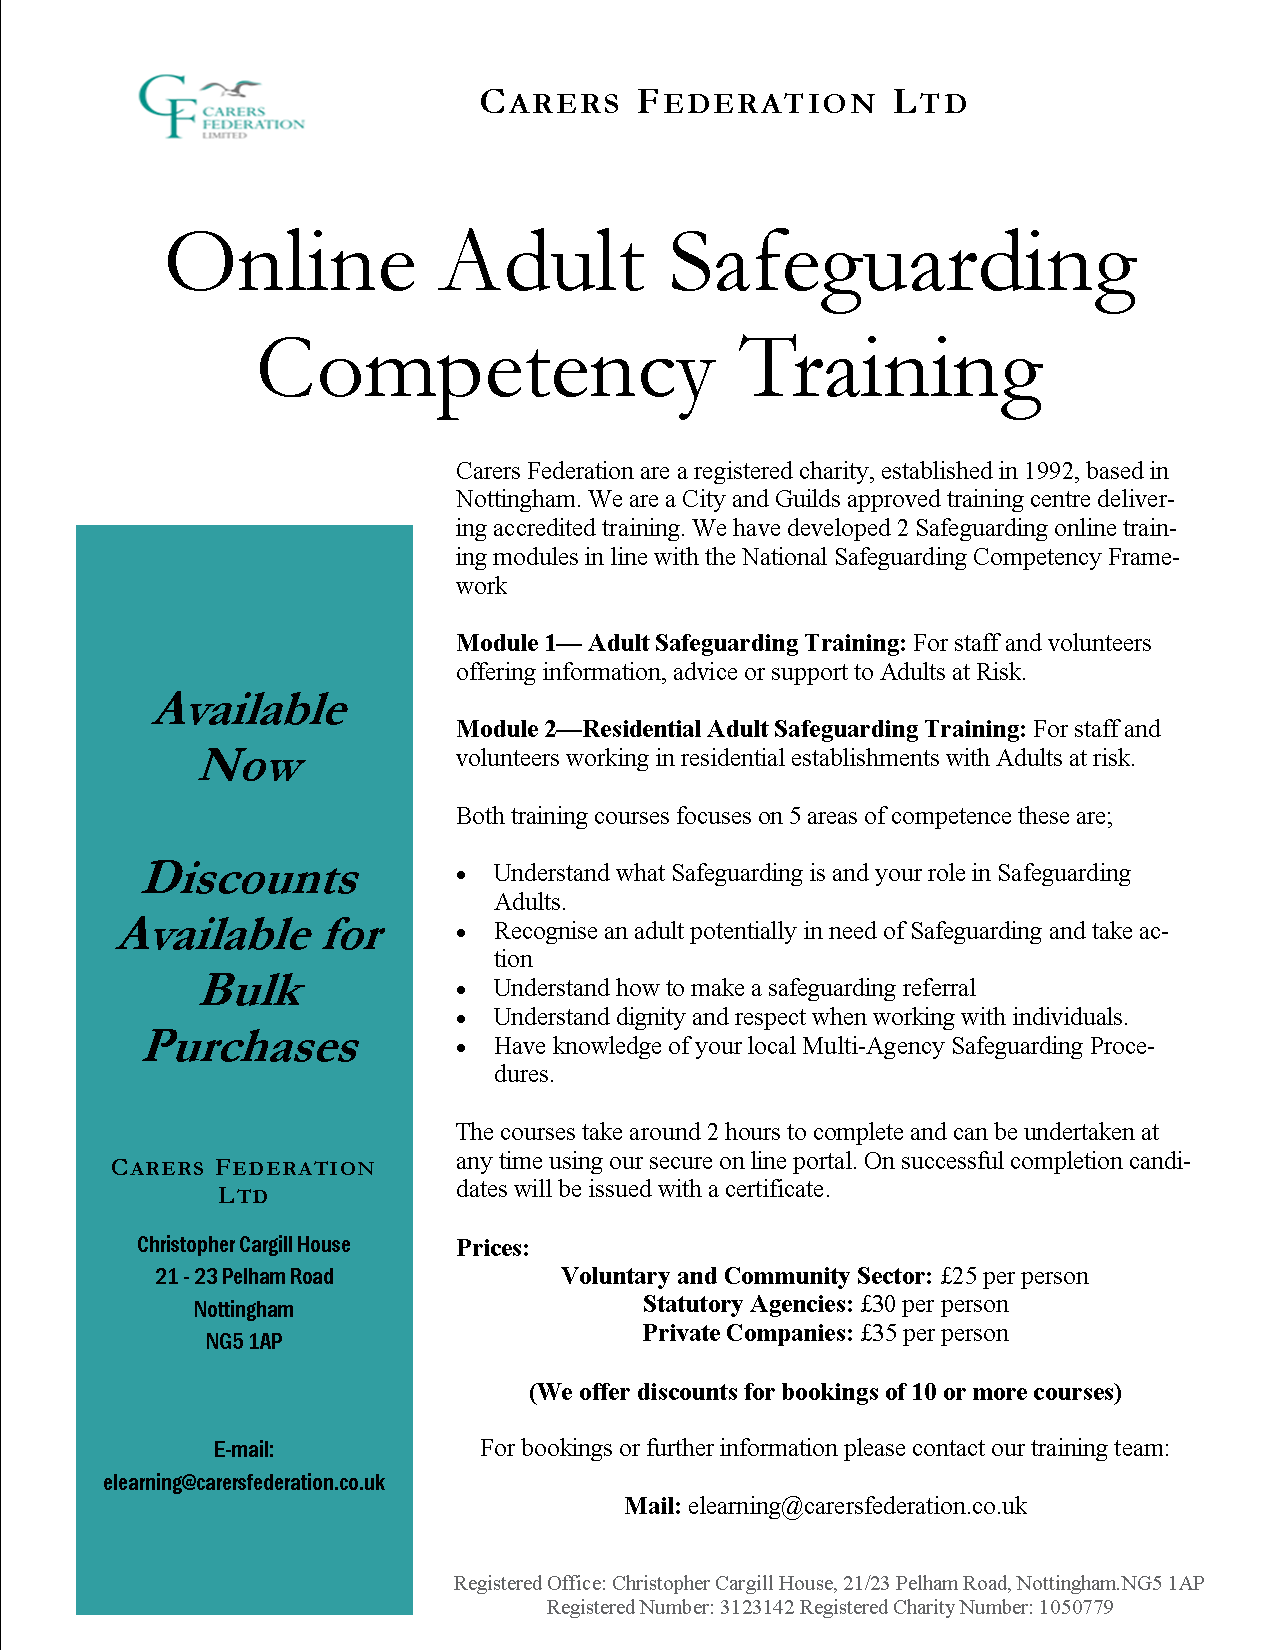 Συνημμένο Safeguarding Training  flyer Feb 2019.png